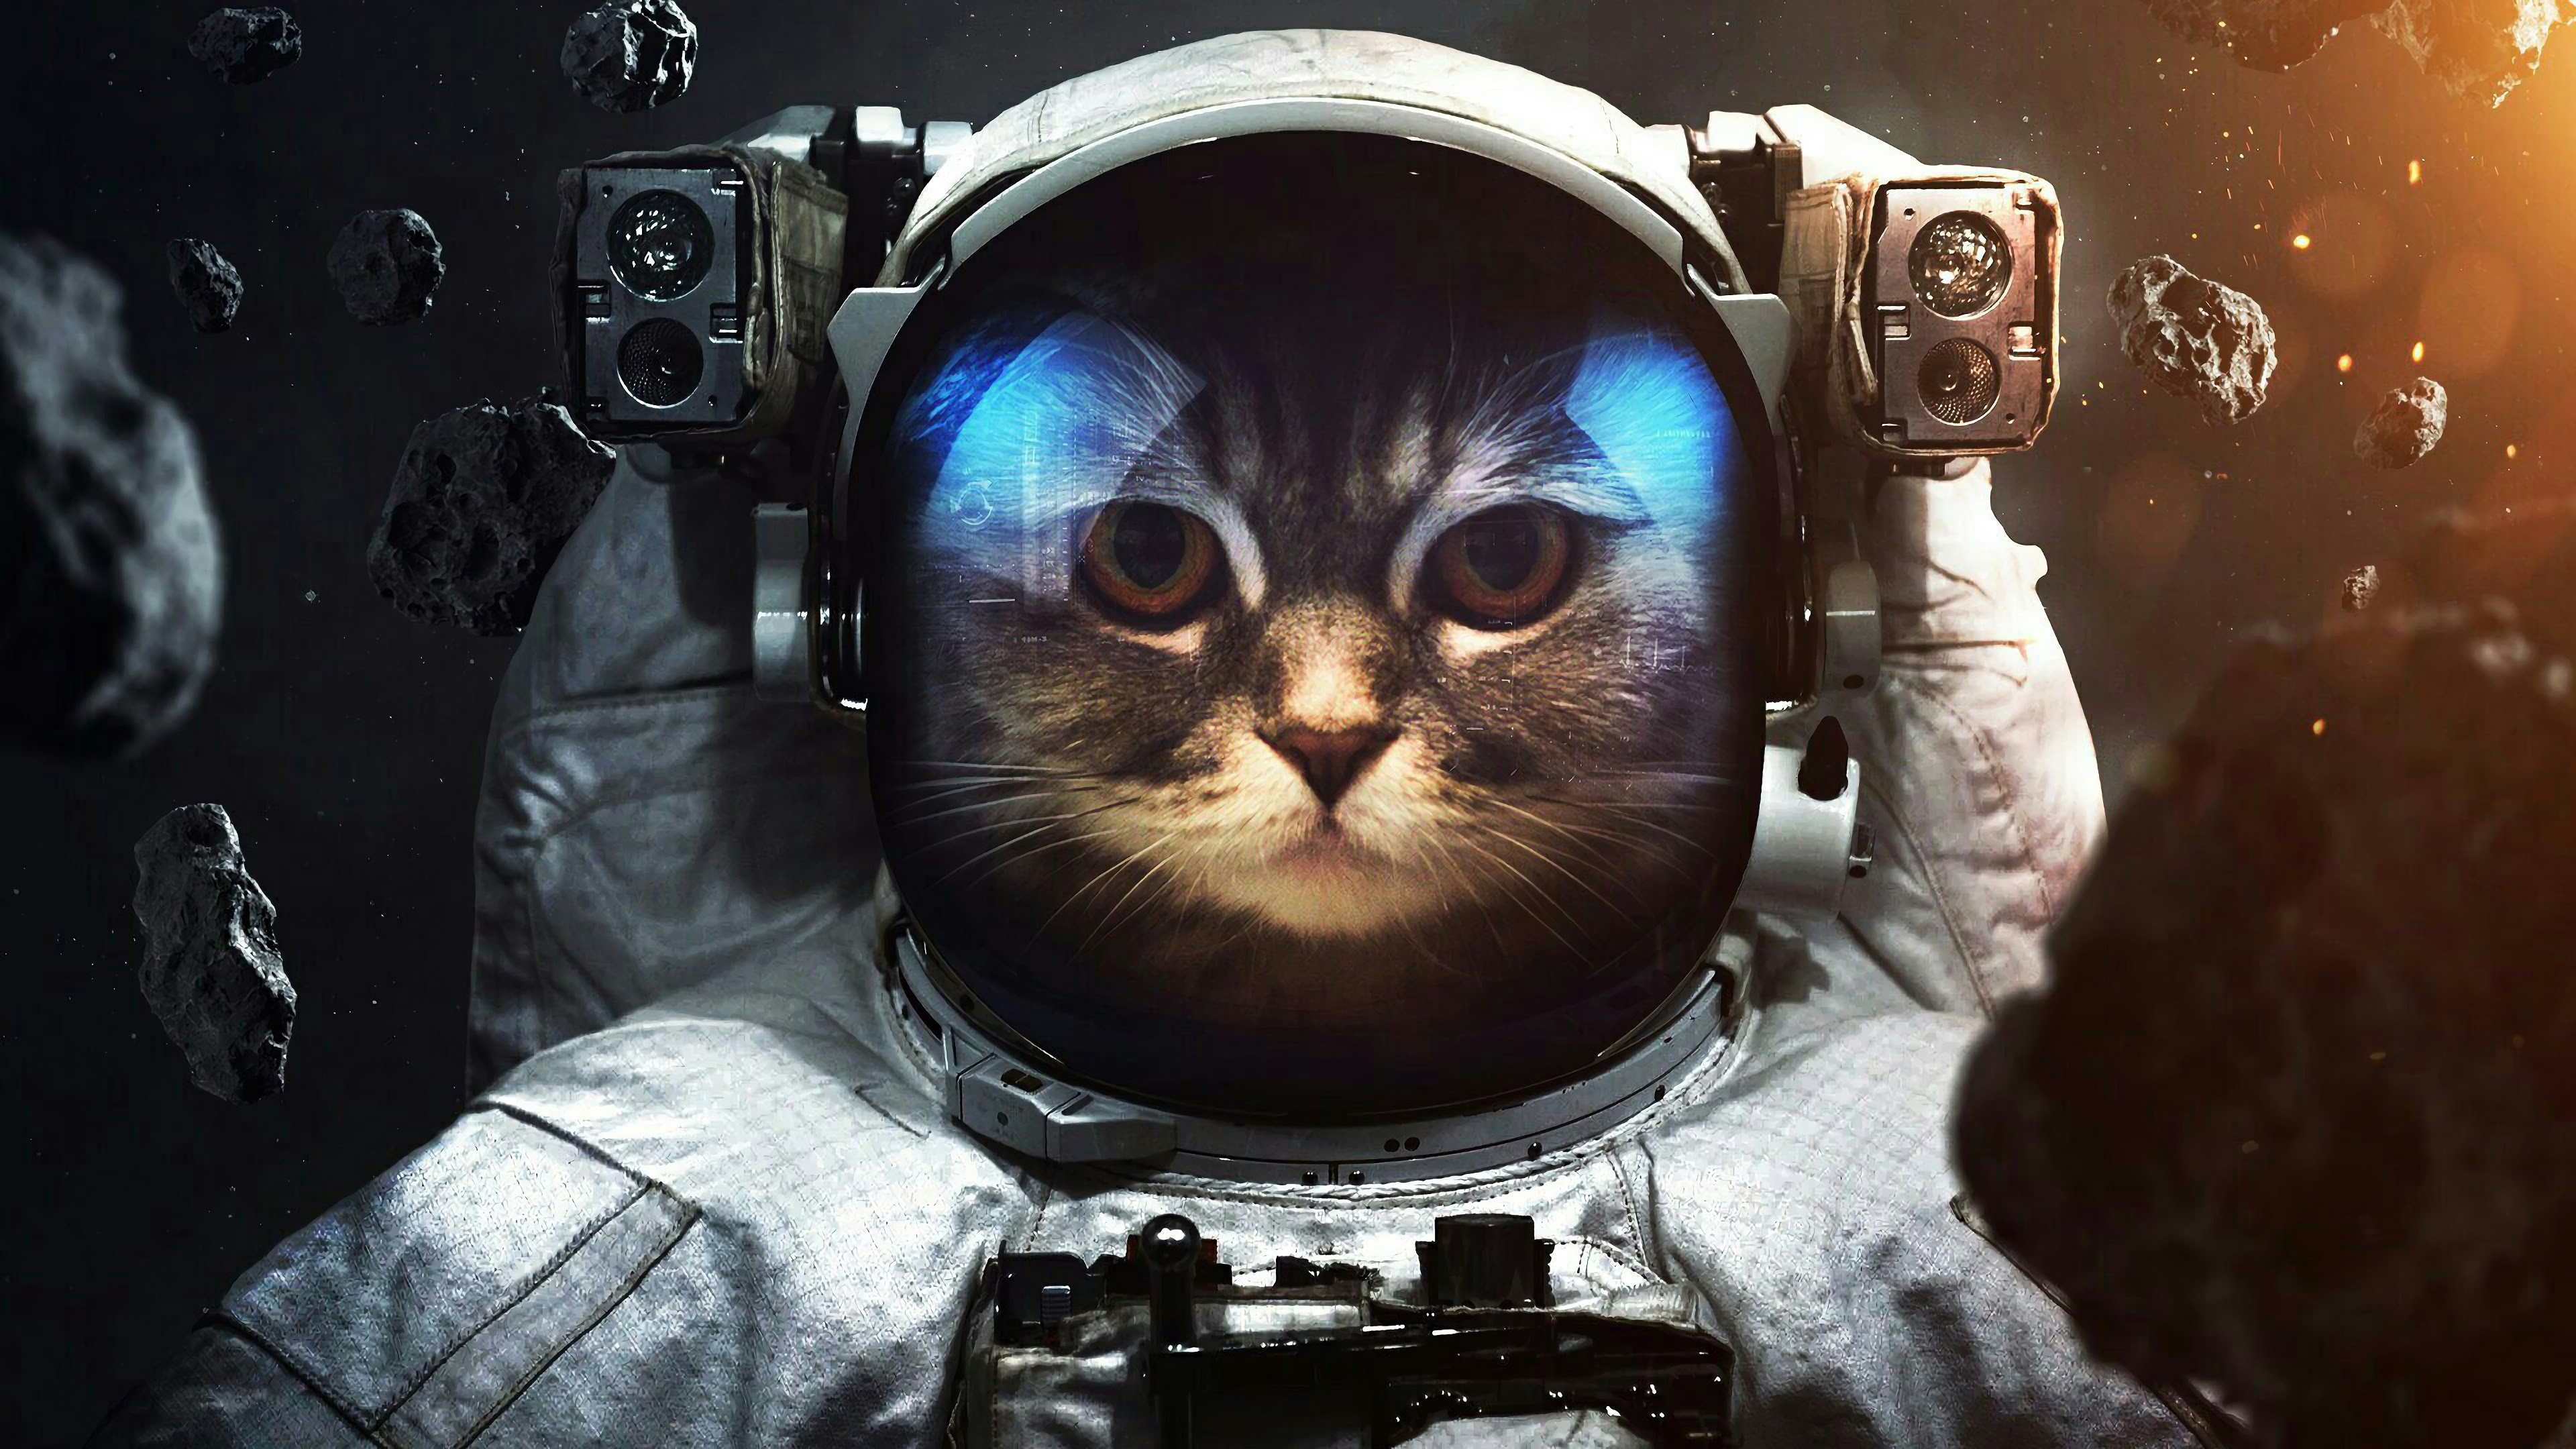 Fondos de pantalla Gato astronauta